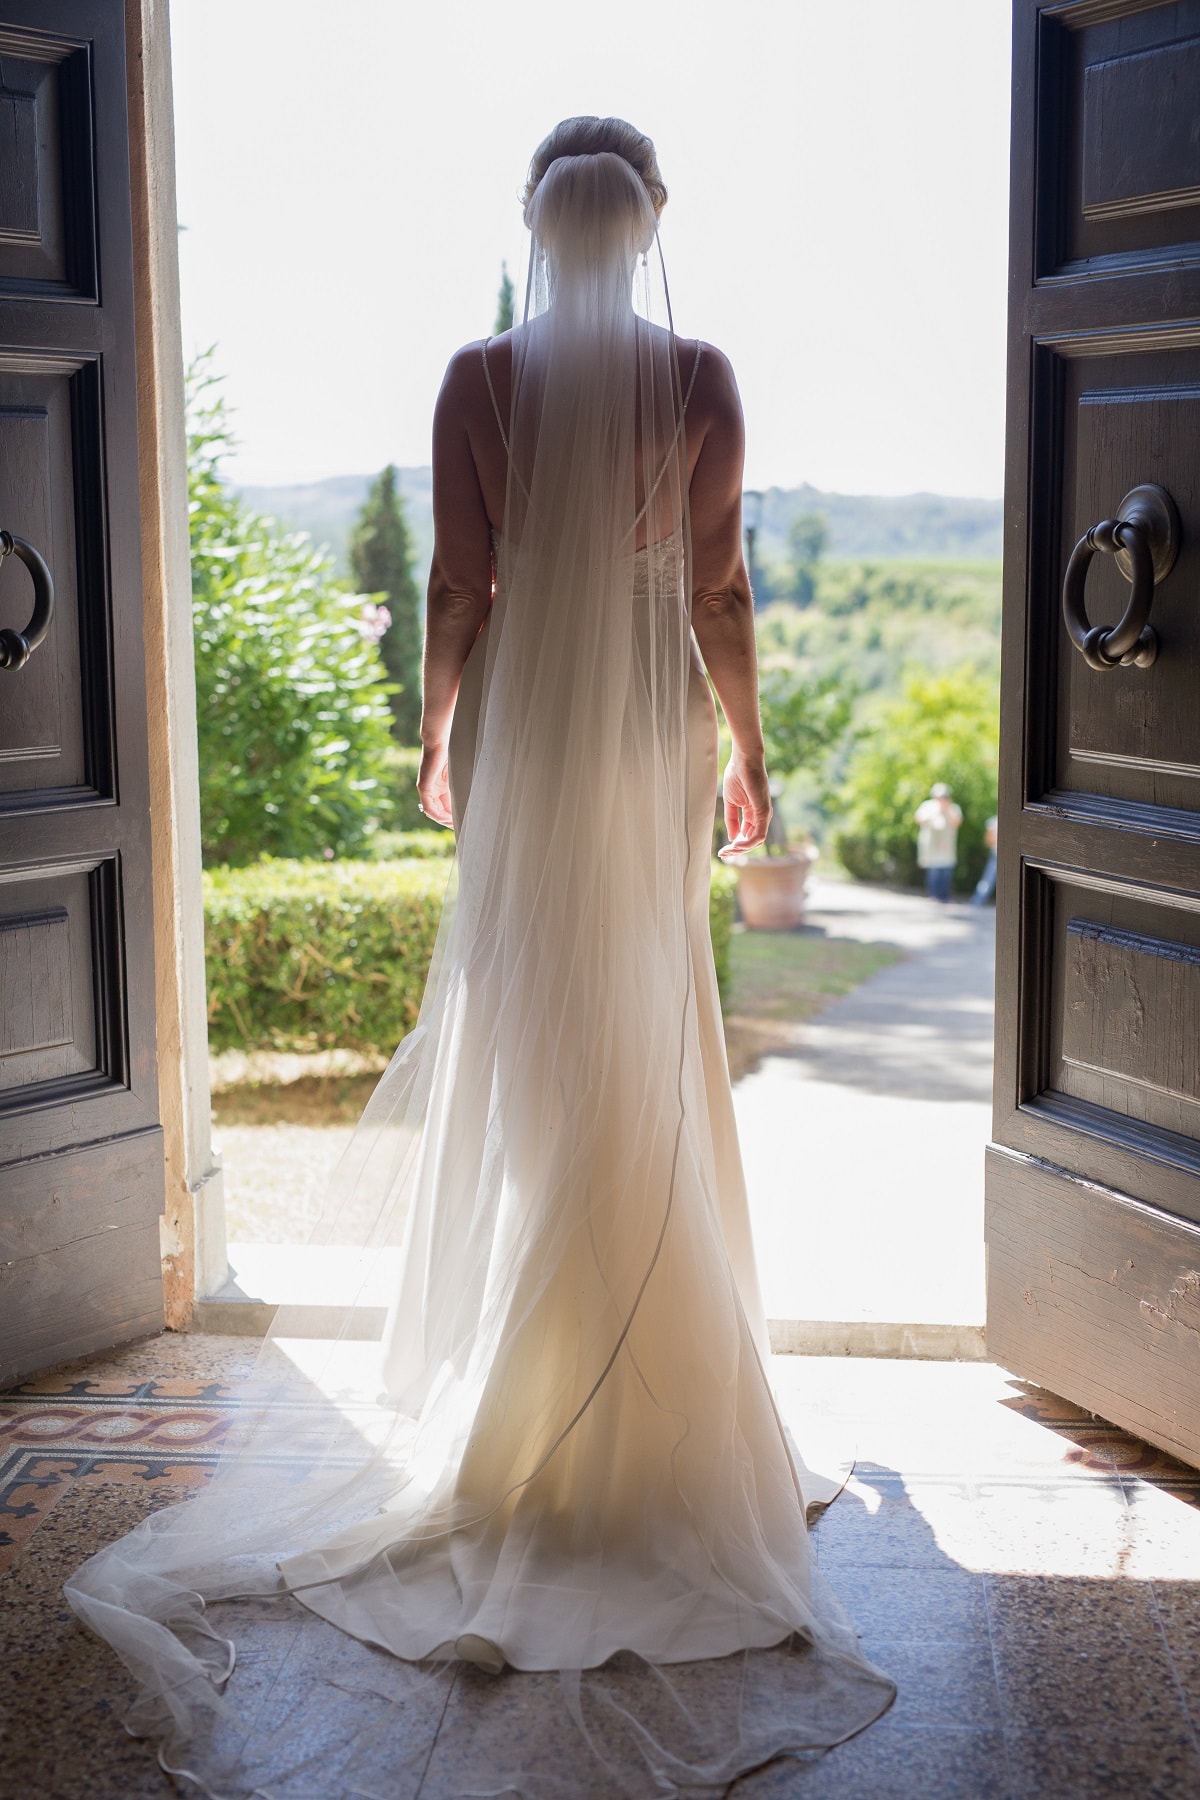 Venue Spotlight AnneMarie & Adrian Review of Borgo Bucciano Wedding Villa in Tuscany | Rosie Meleady, Ronan Skelly, Mario Feliciello Studio